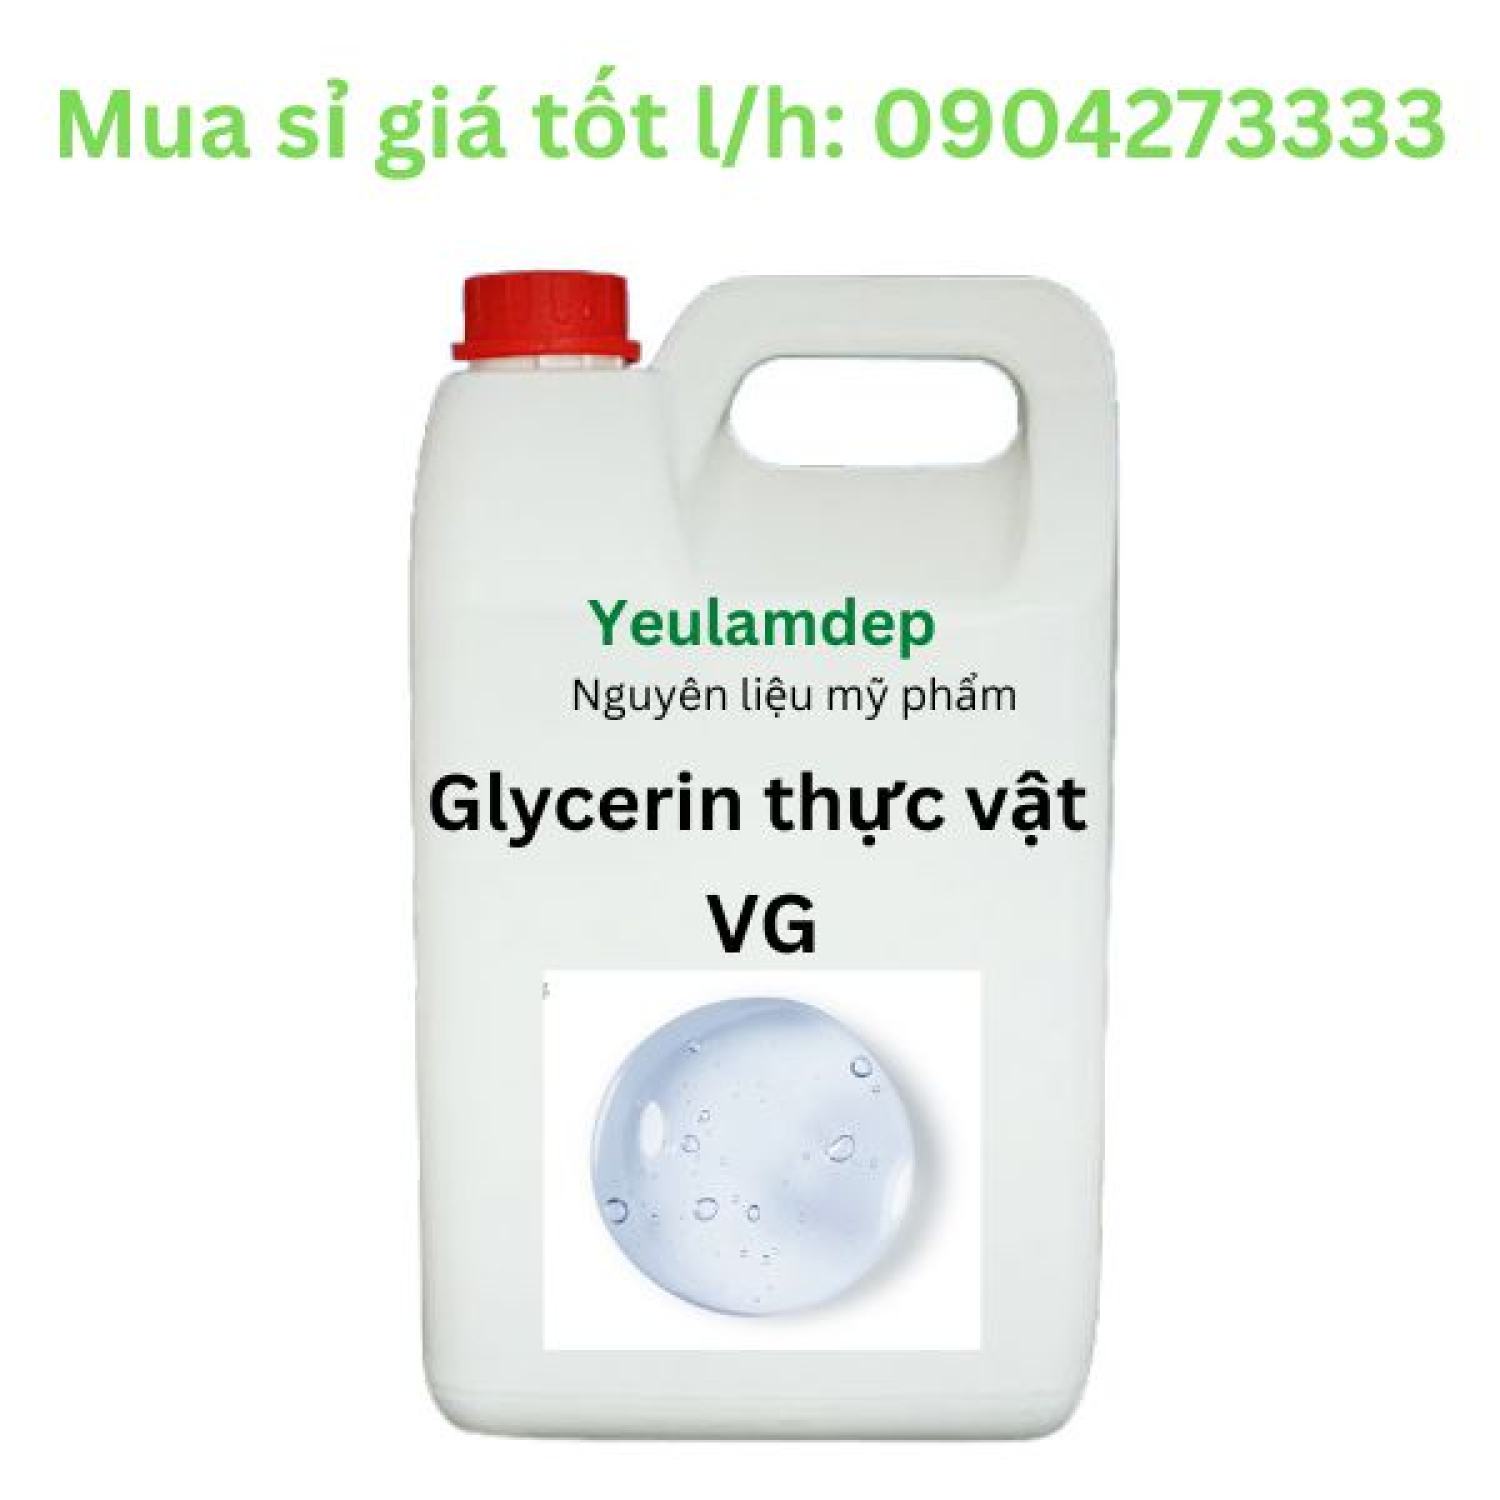 Glycerin thực vật 99,7% (VG) - nguyên liệu mỹ phẩm - 1 kg